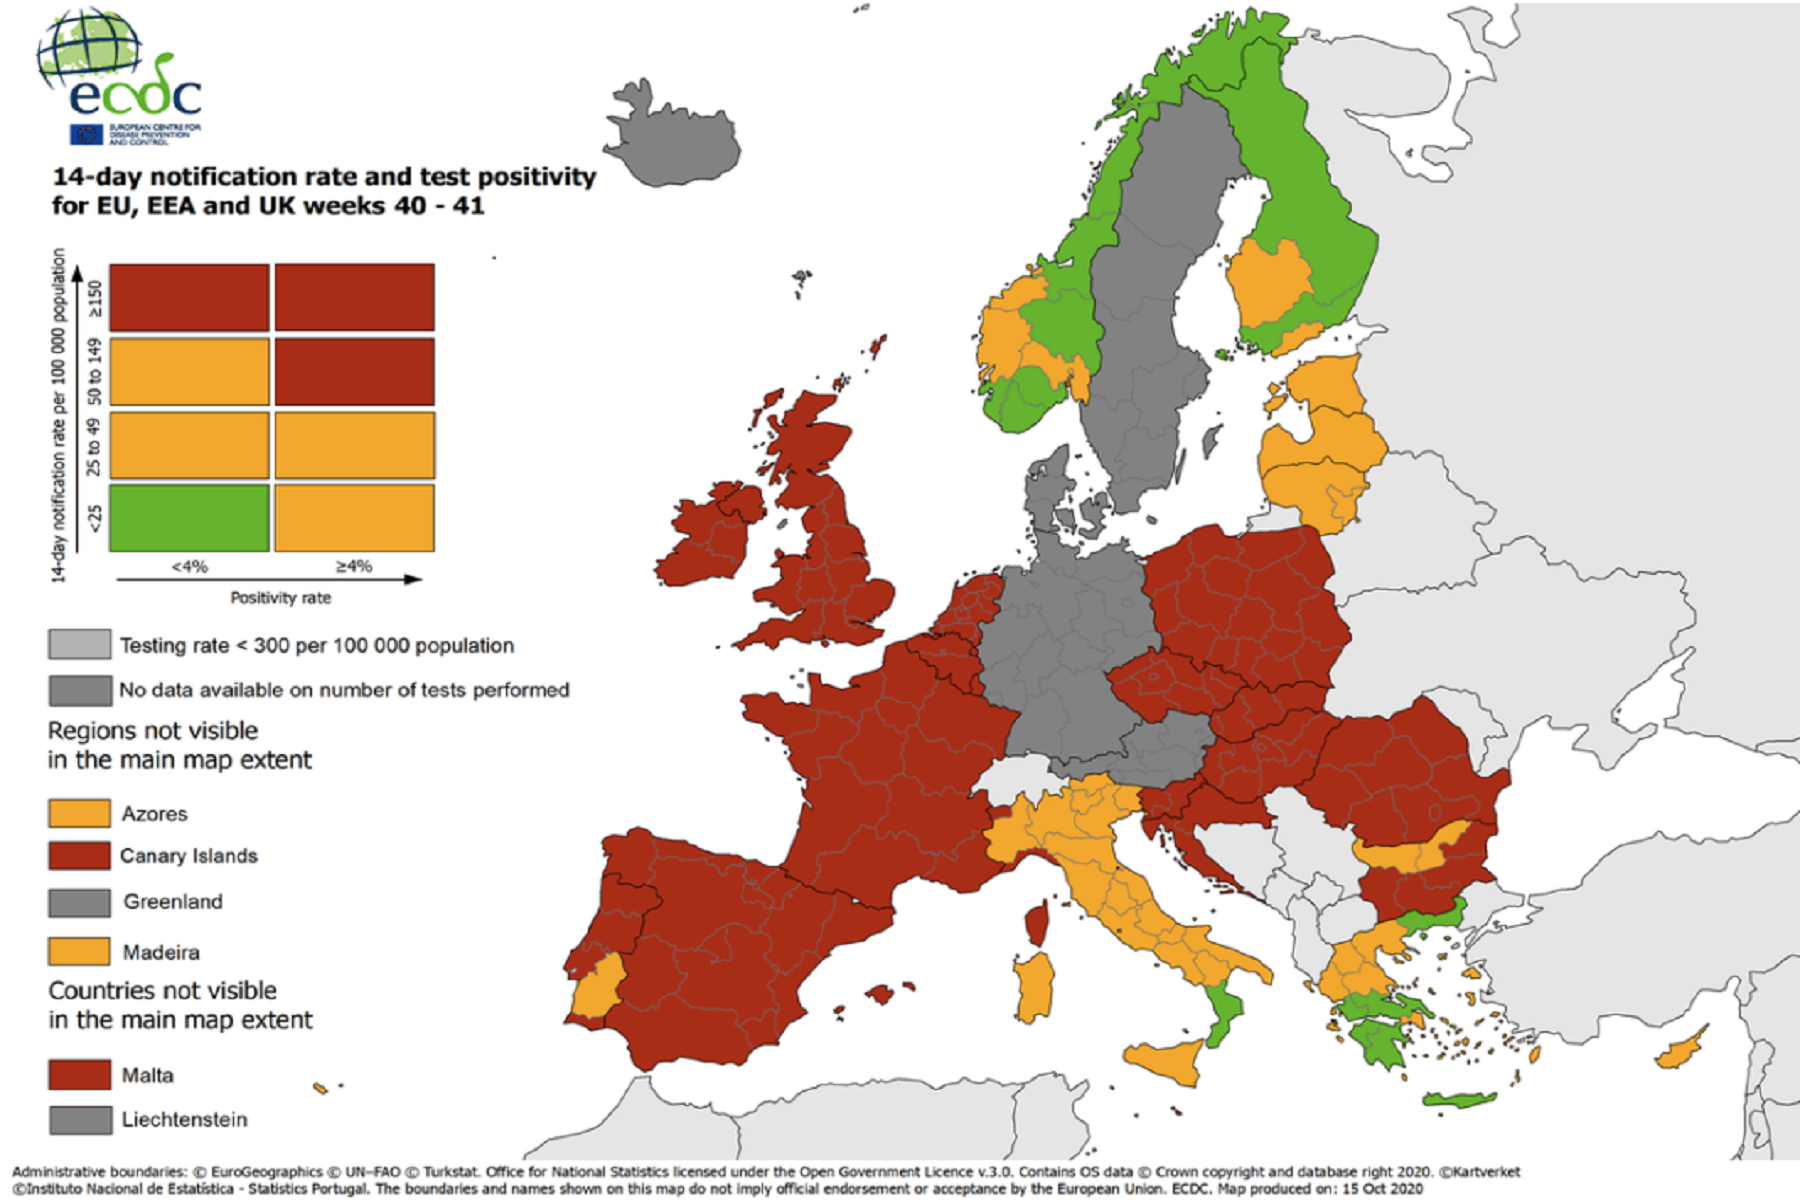 Ευρωπαϊκή Ένωση: Εισάγεται σύστημα επισκόπησης της πανδημίας με εθελοντική συμμετοχή των χωρών